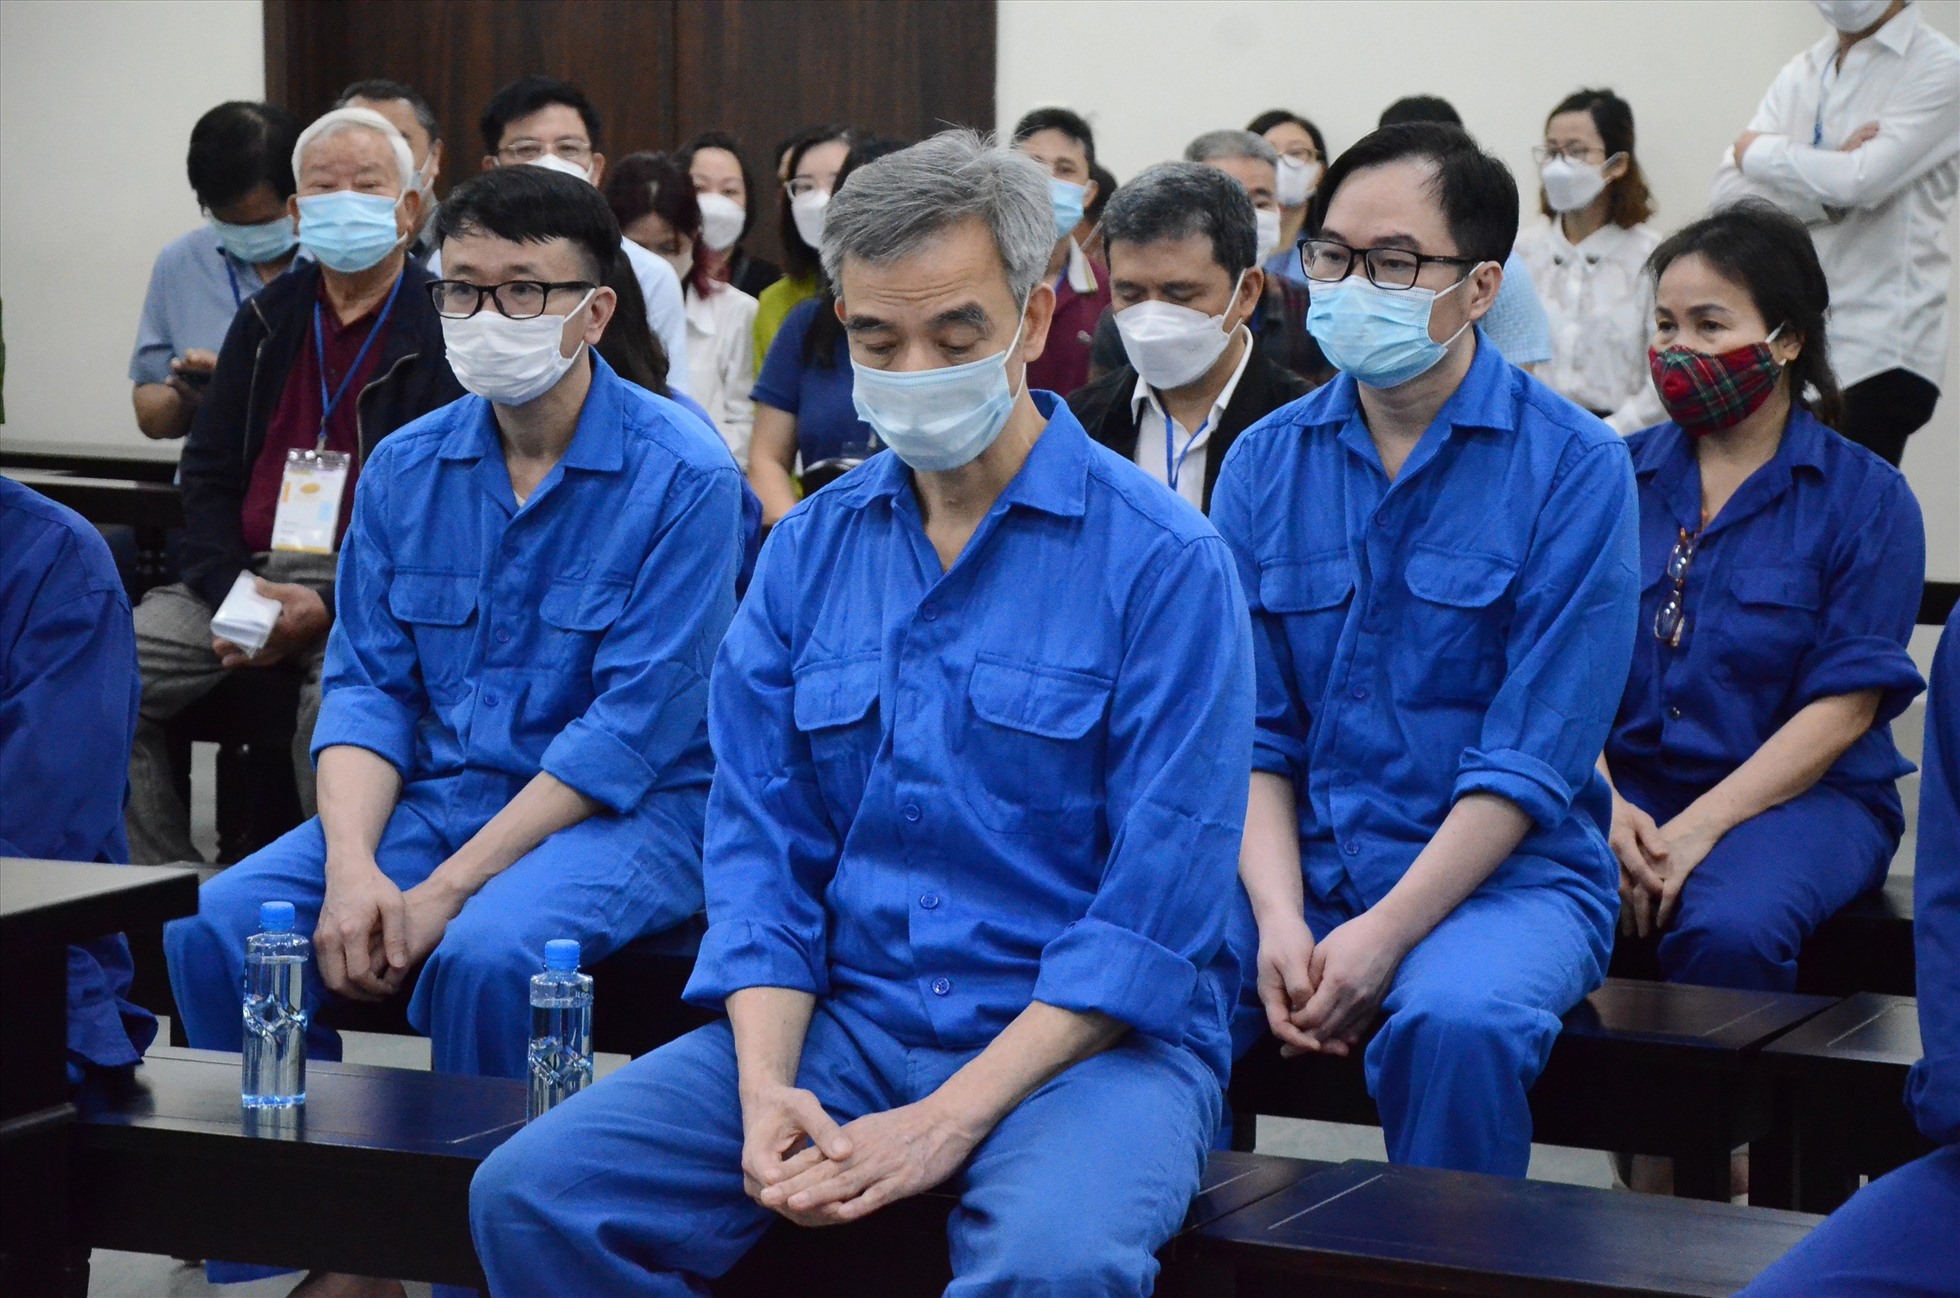 Phiên toà xét xử cựu Giám đốc Bệnh viện Tim Hà Nội và 11 bị cáo khác dự kiến diễn ra trong 5 ngày. Ảnh: Việt Dũng